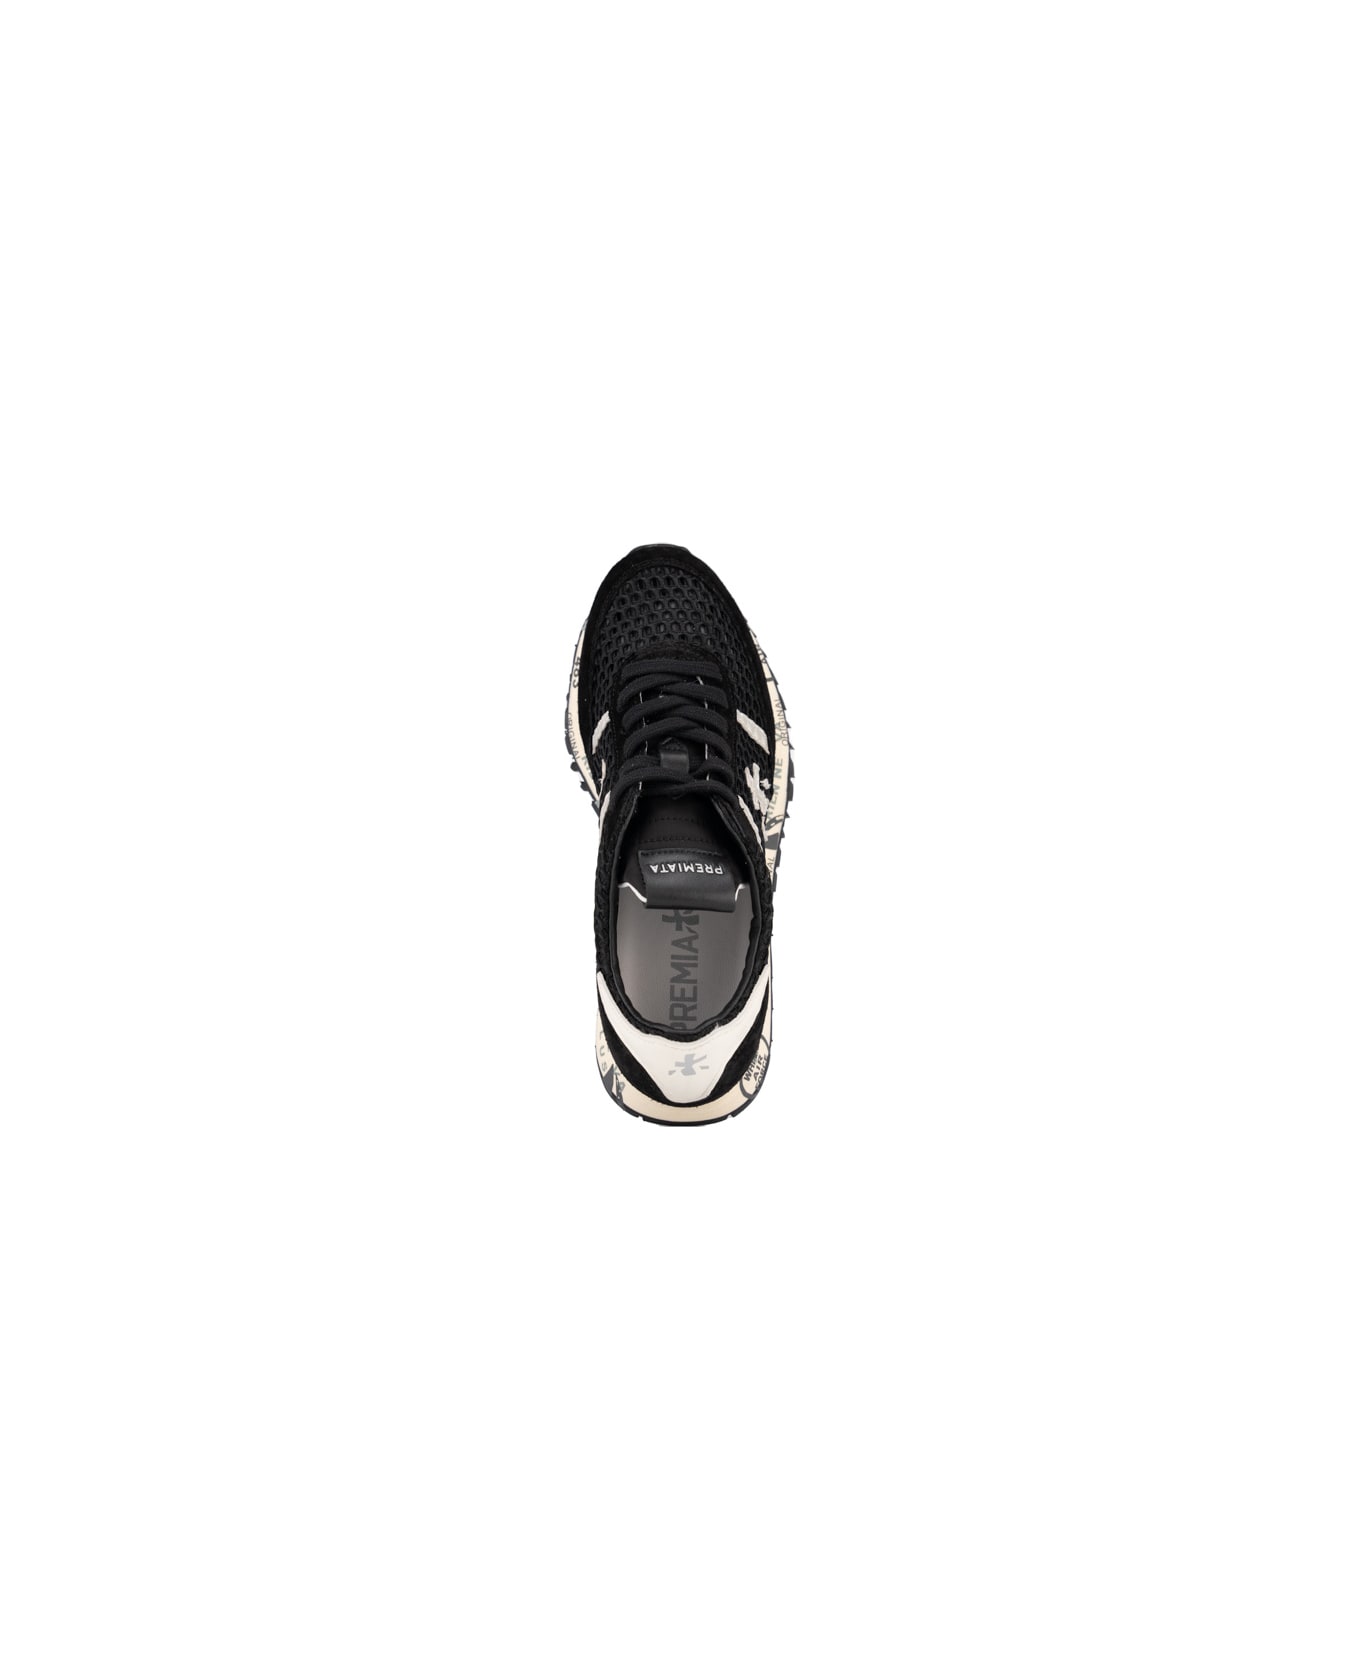 Premiata Seand 6753 Sneakers - Nero スニーカー